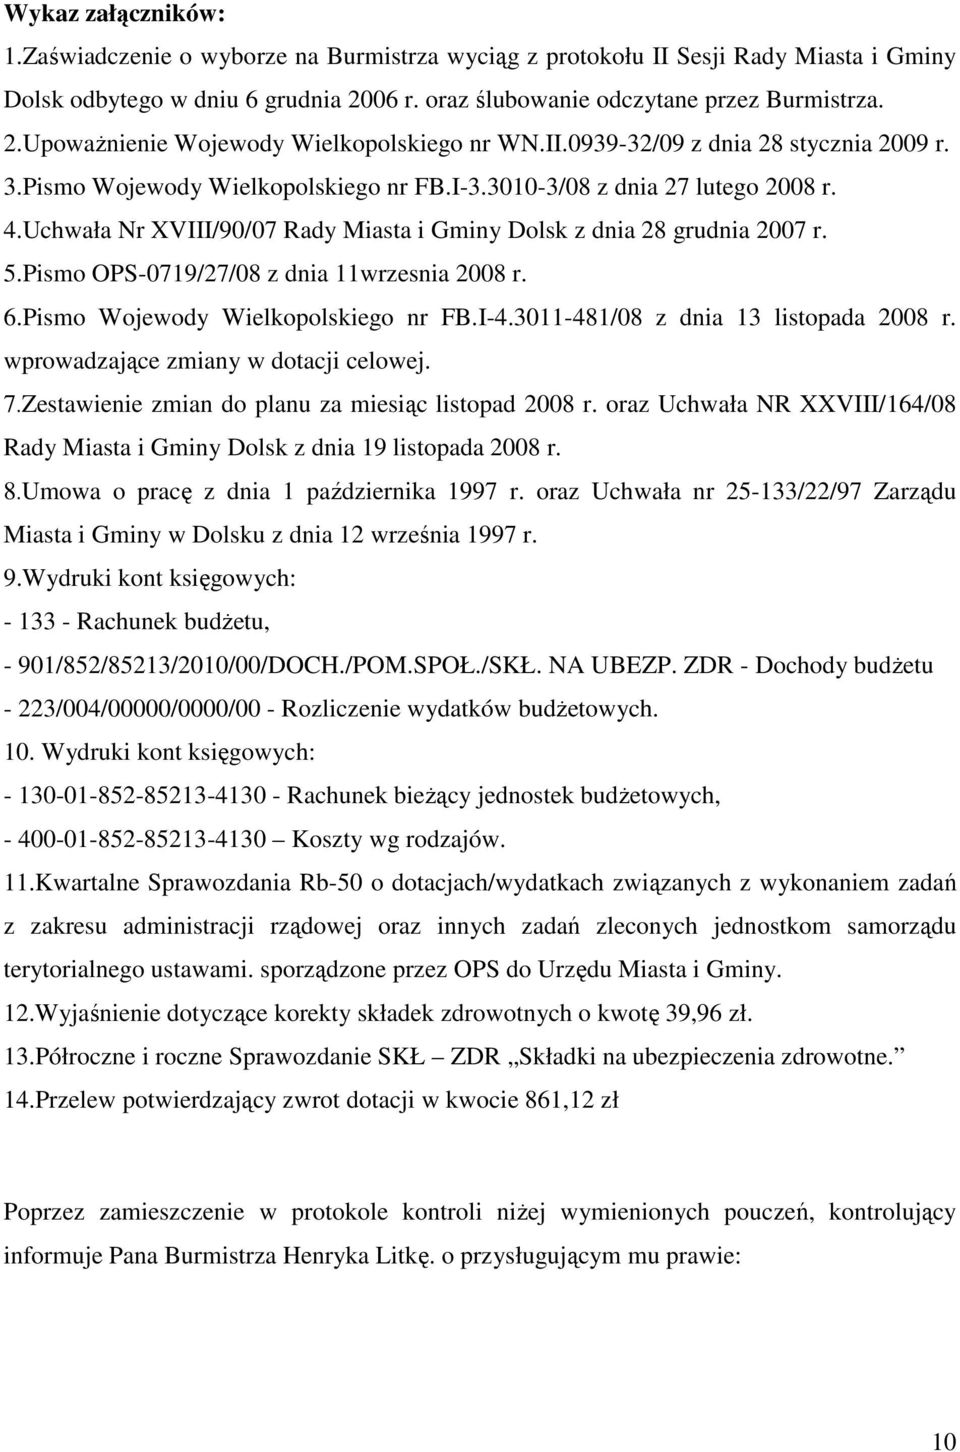 Pismo OPS-0719/27/08 z dnia 11wrzesnia 2008 r. 6.Pismo Wojewody Wielkopolskiego nr FB.I-4.3011-481/08 z dnia 13 listopada 2008 r. wprowadzające zmiany w dotacji celowej. 7.